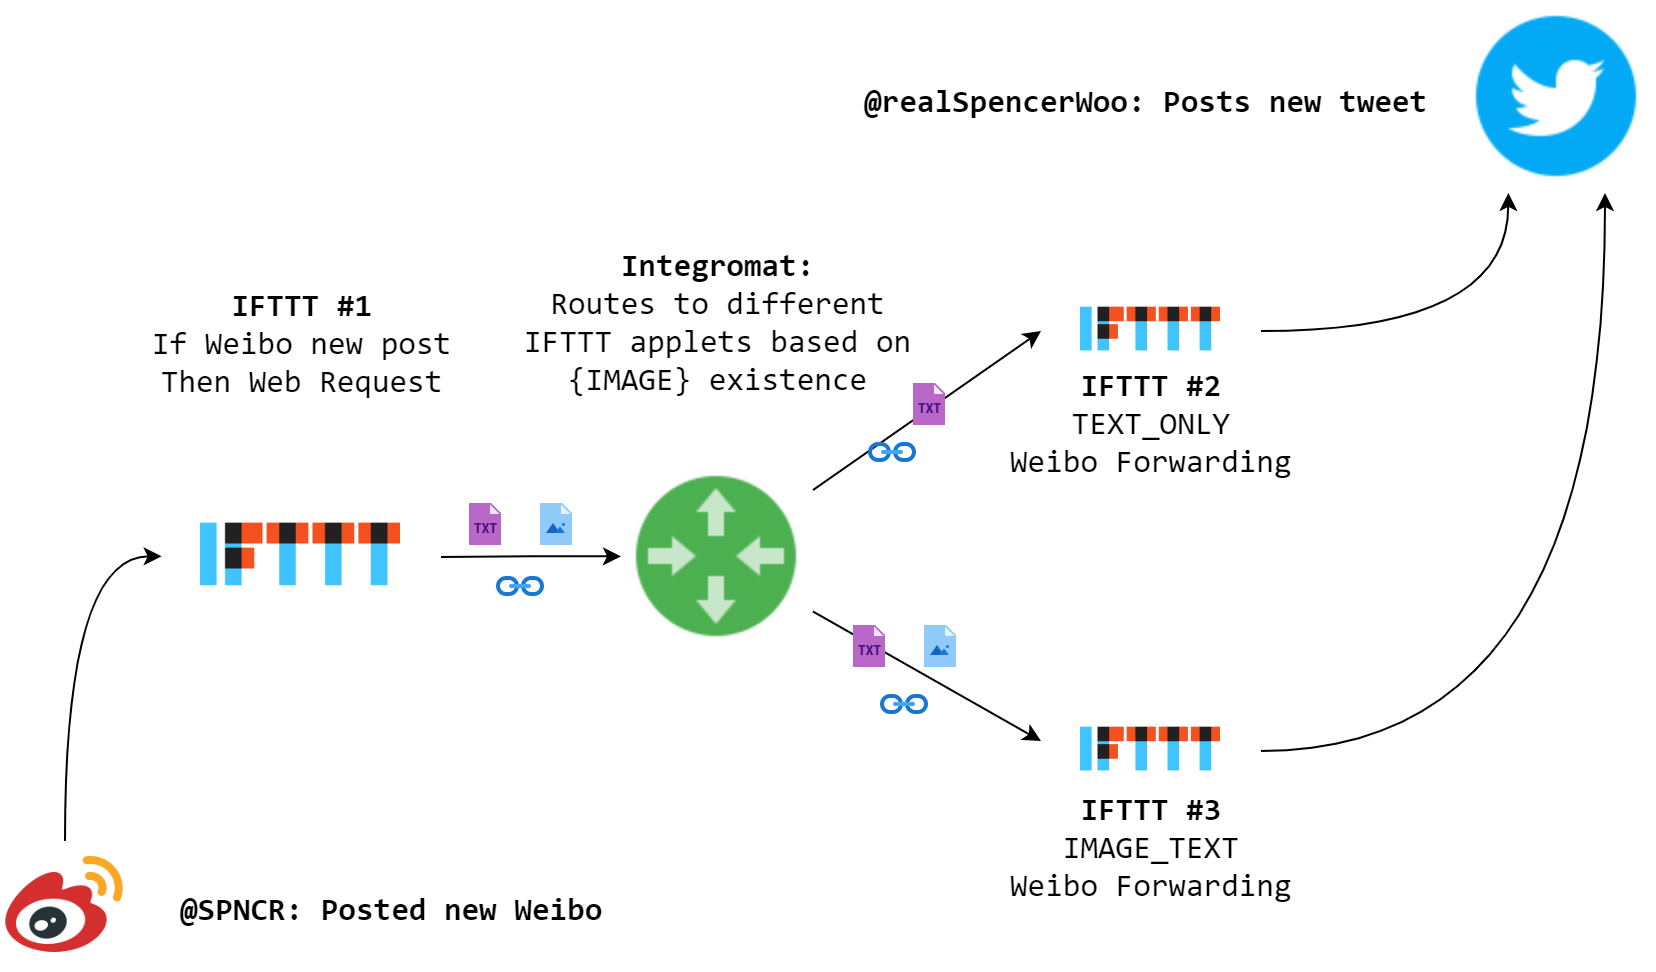 利用 IFTTT 和 Integromat 配合实现微博 Twitter 转发流程